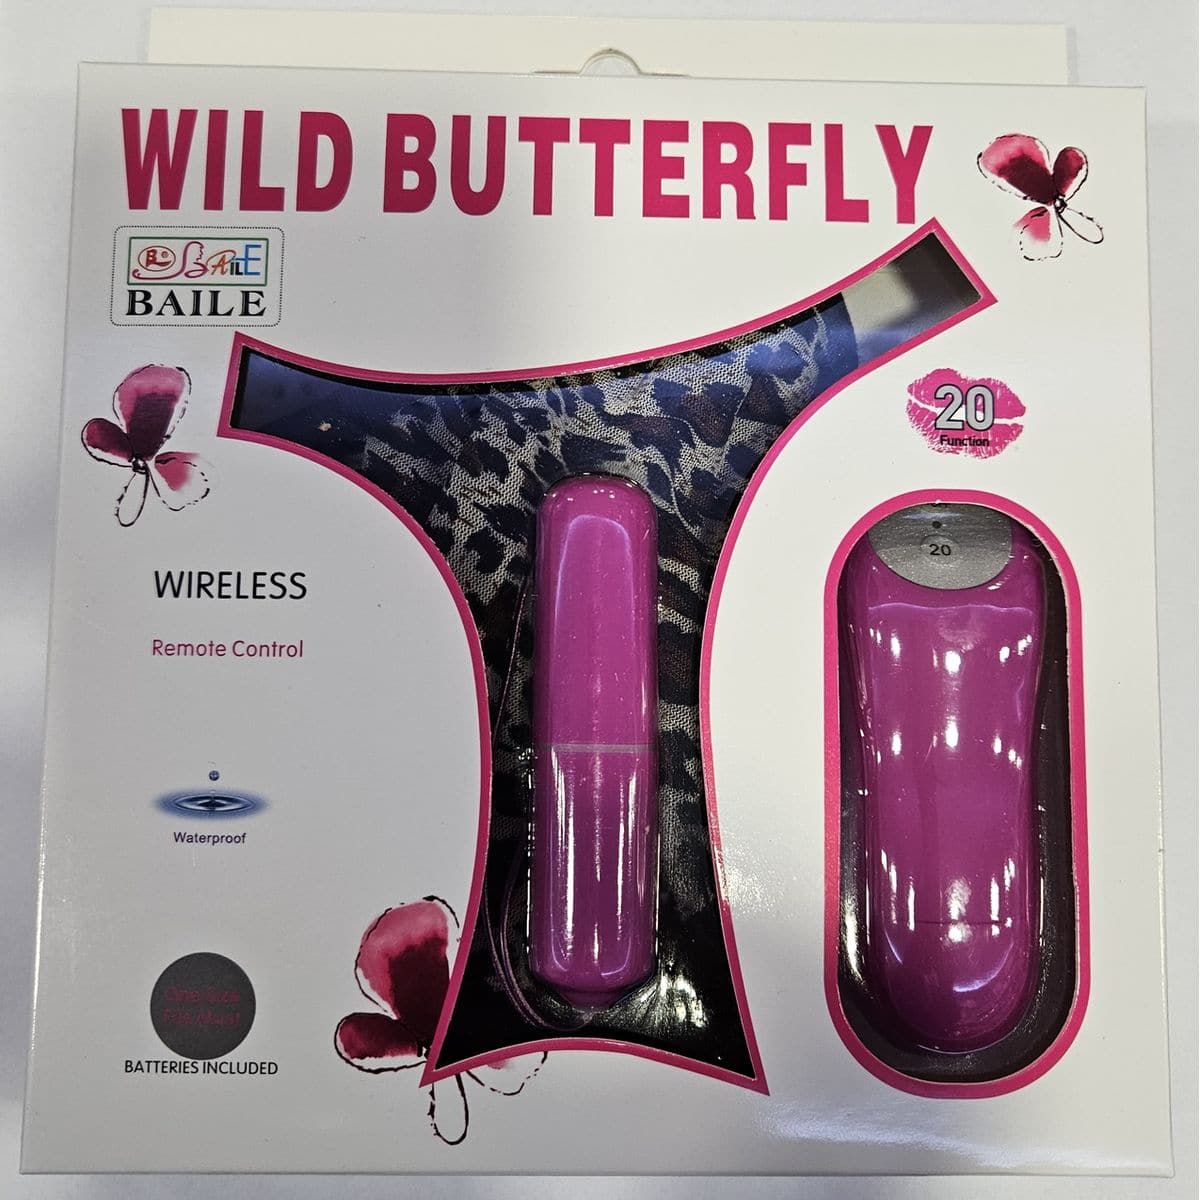 Cueca Vibratória Wild Butterfly Wireless (BALA E COMANDO ROXO), Tamanho único - Pérola SexShop